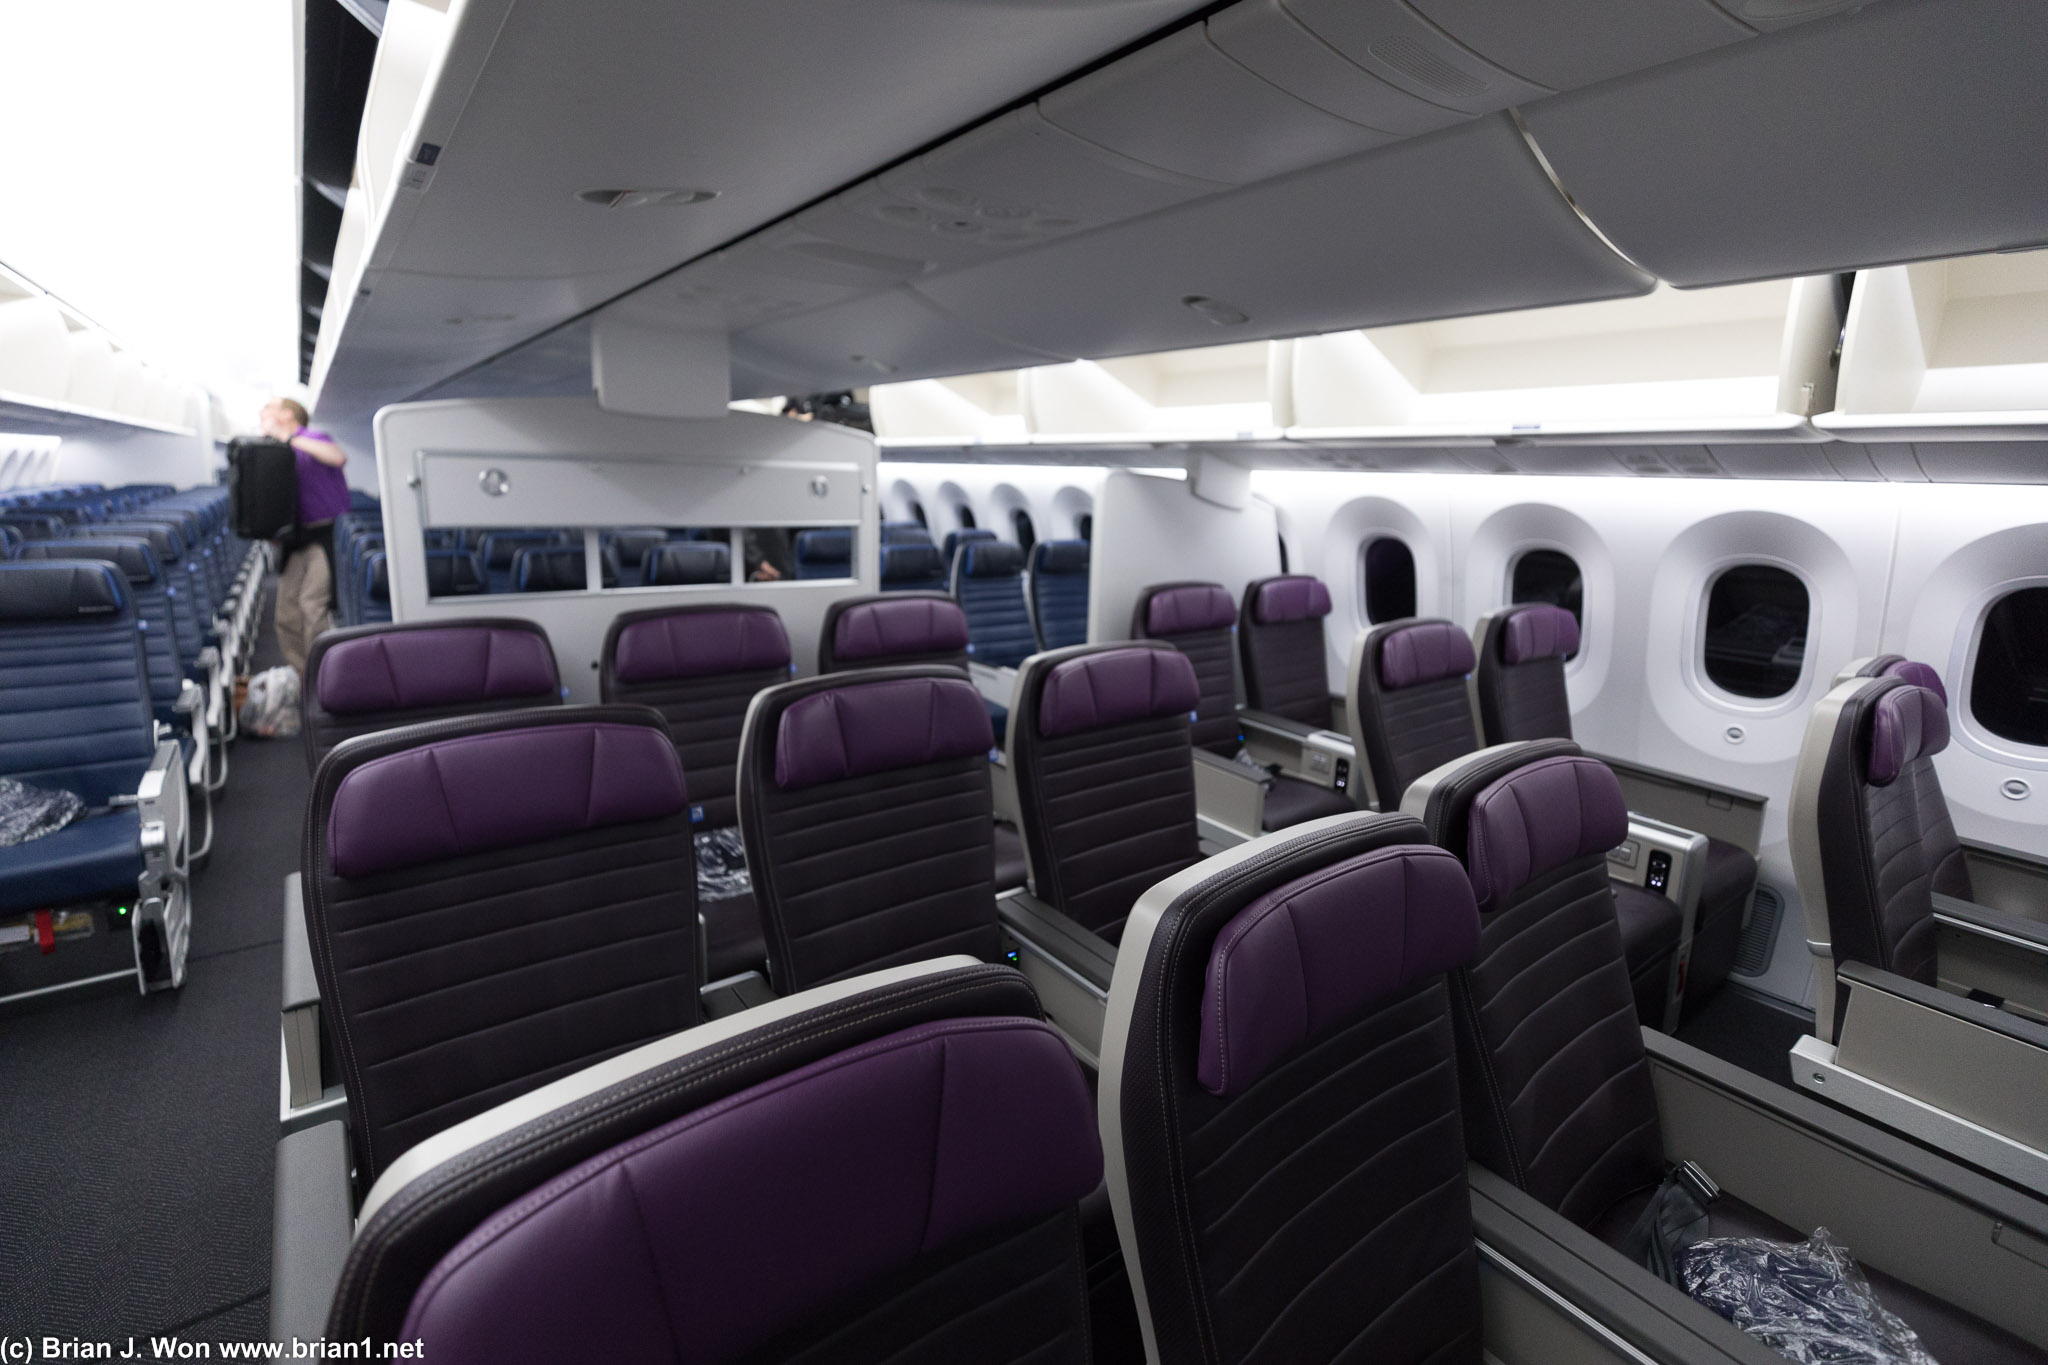 New Premium Plus (Premium Economy) cabin, 21 seats in 2-3-2.